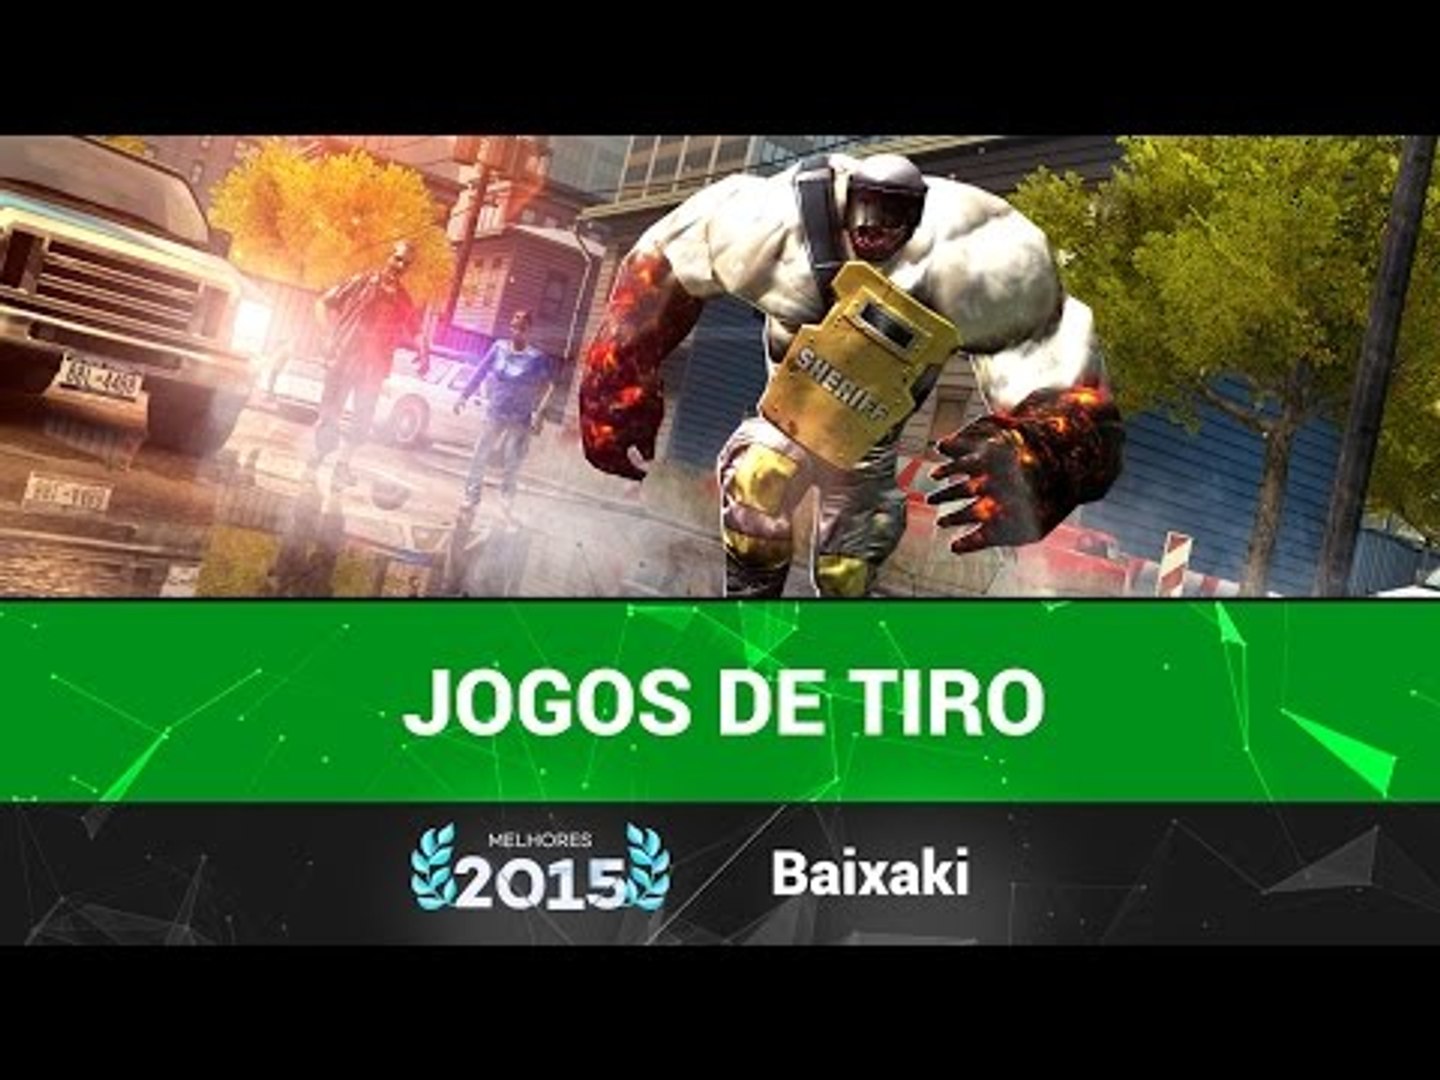 Melhores jogos de Tiro de 2015 para Android, iPhone e Windows Phone -  Baixaki - video Dailymotion